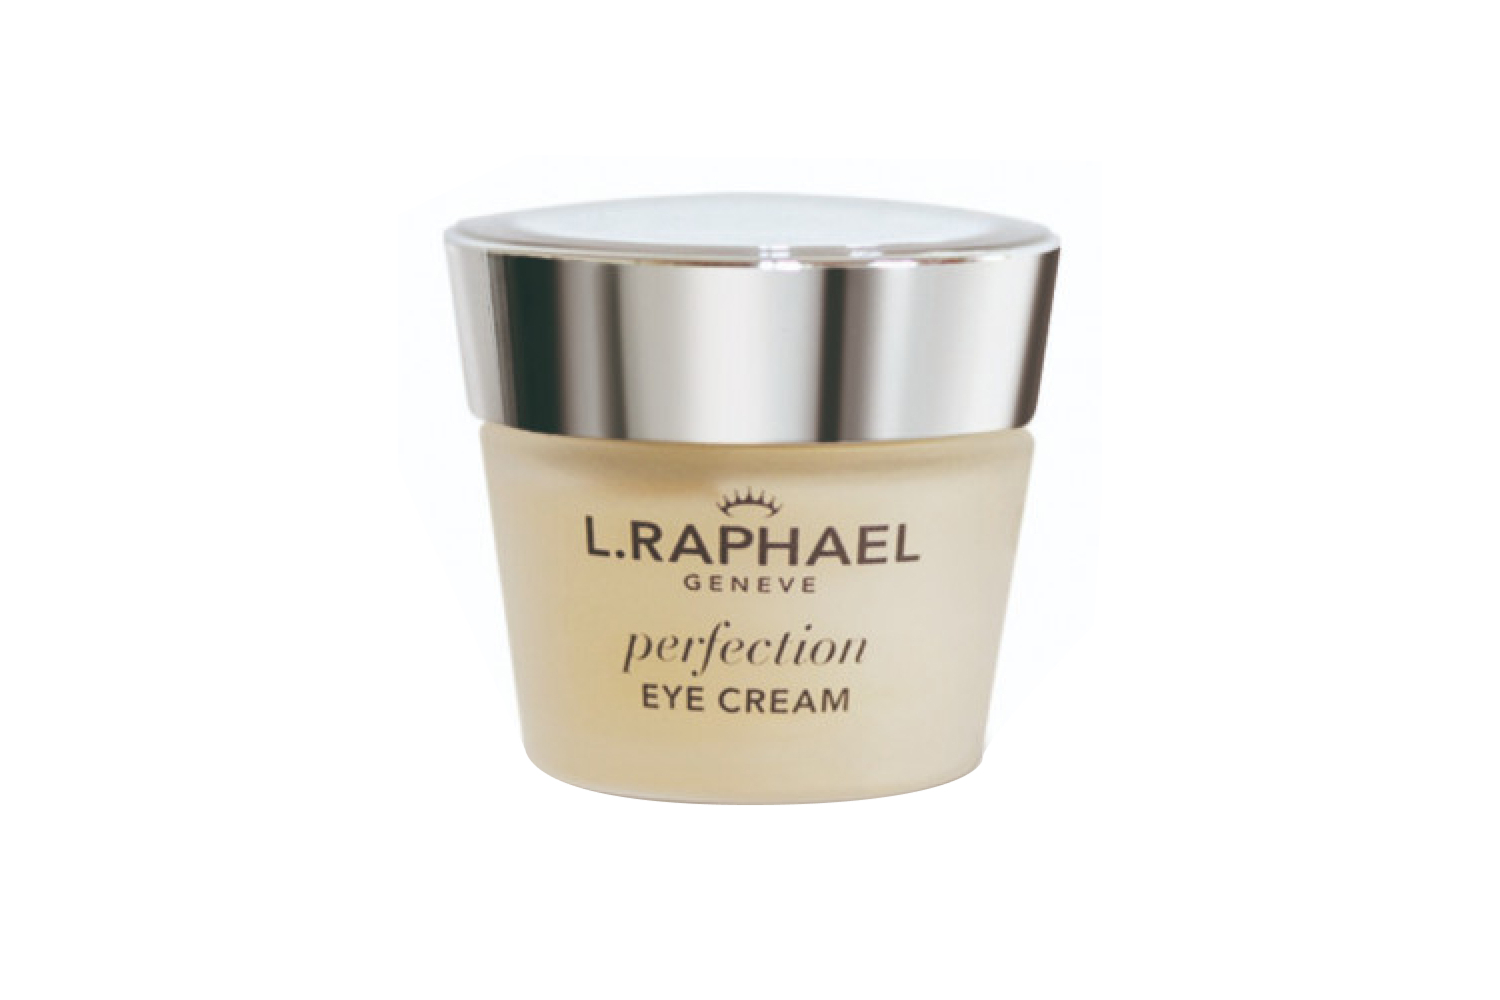 Крем для кожи вокруг глаз Perfection Eye Cream, L. Raphael включает в себя запатентованный комплекс, который обладает антивозрастными и восстанавливающими свойствами. Средство помогает подтянуть и разгладить нежную кожу в области глаз